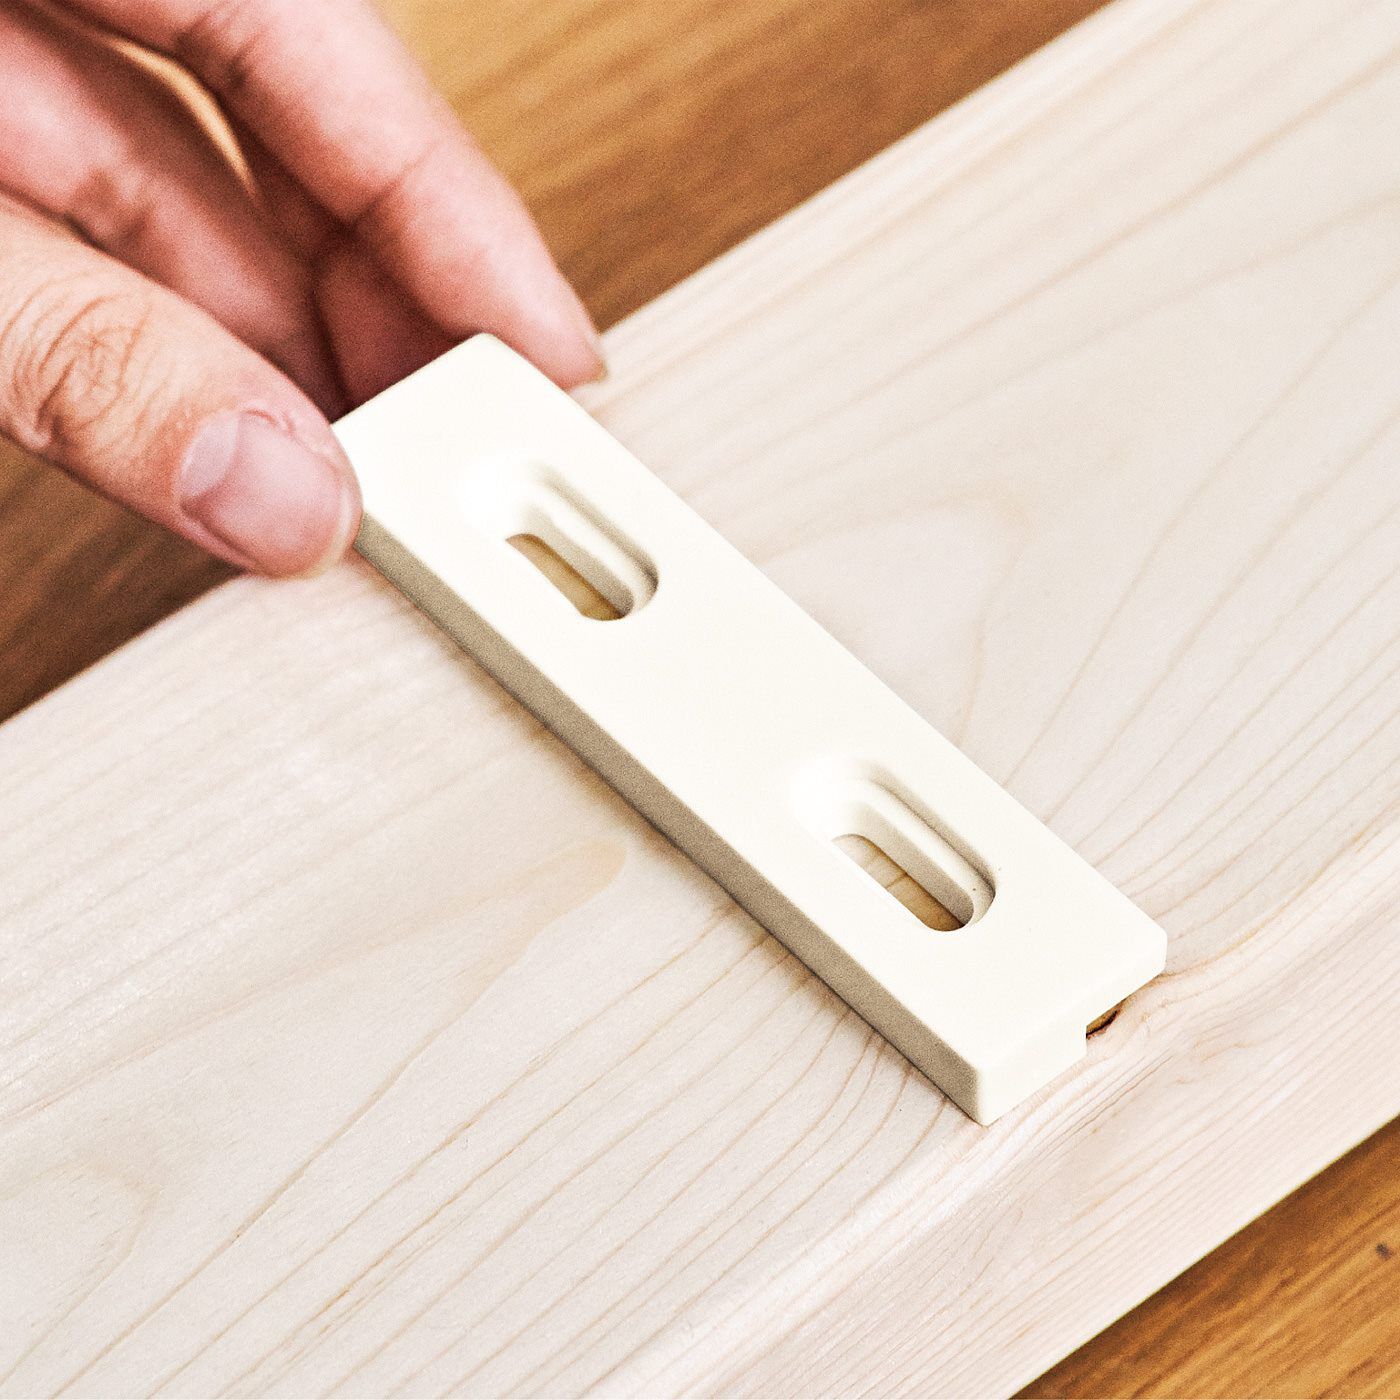 Real Stock|木材1本からはじめるお手軽DIY　棚を増やしてカスタマイズ 1×6棚受用アジャスター〈14.6cm・ホワイト〉|取り付け寸法より20mm短い1×6材を用意します。 HOW TO USE　1．棚の取り付け位置を確認する。